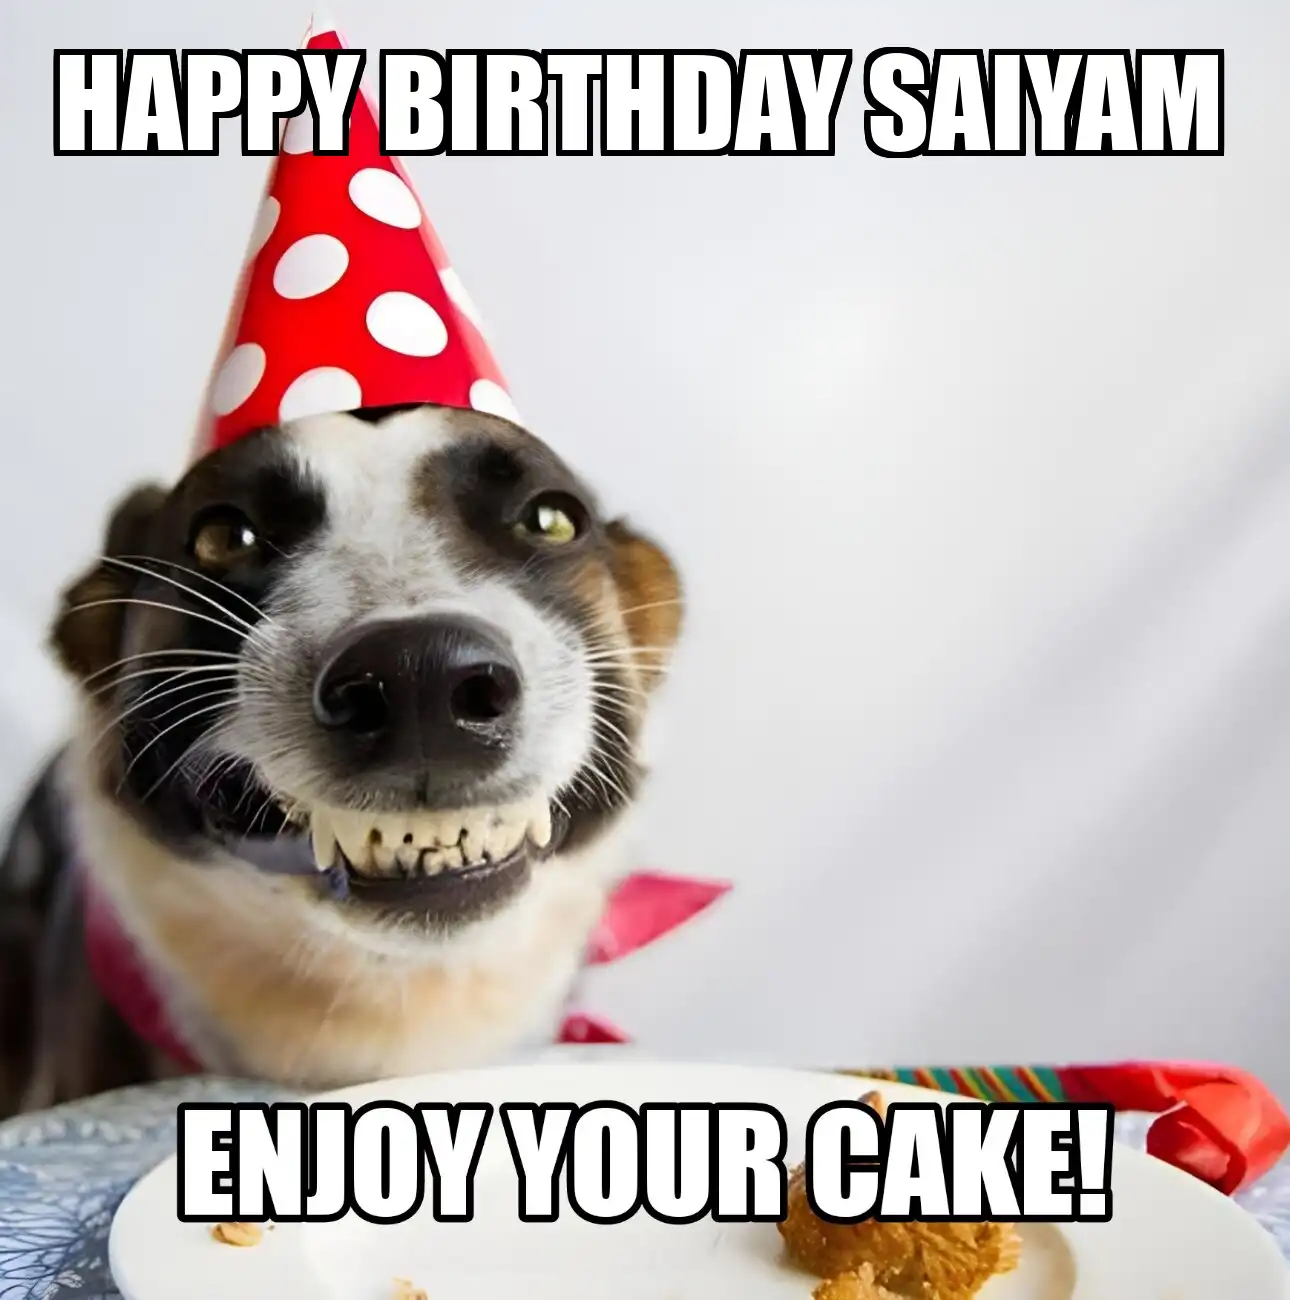 Happy Birthday Saiyam Enjoy Your Cake Dog Meme